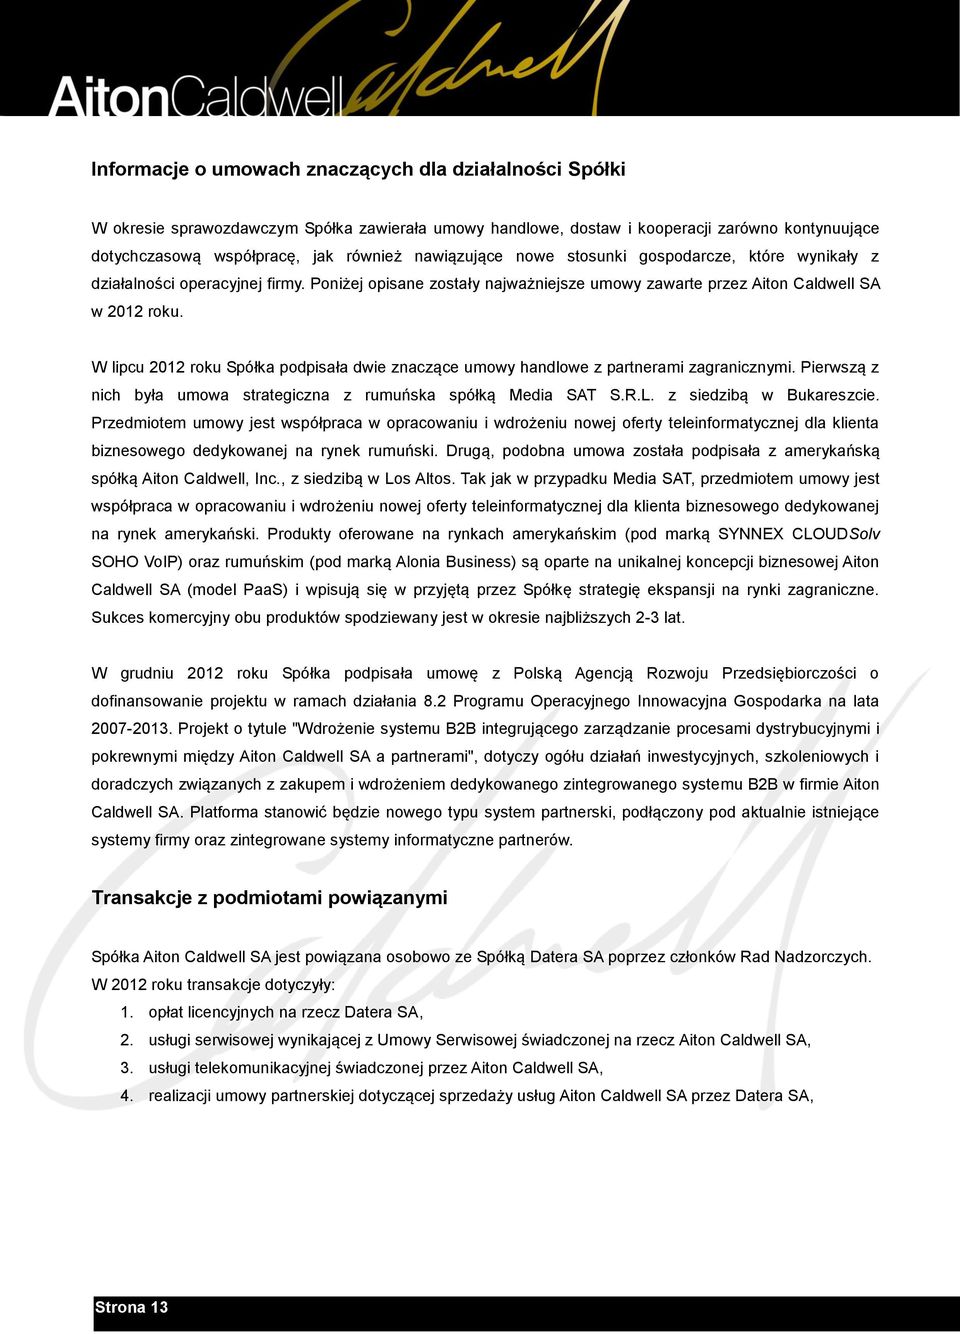 W lipcu 2012 roku Spółka podpisała dwie znaczące umowy handlowe z partnerami zagranicznymi. Pierwszą z nich była umowa strategiczna z rumuńska spółką Media SAT S.R.L. z siedzibą w Bukareszcie.